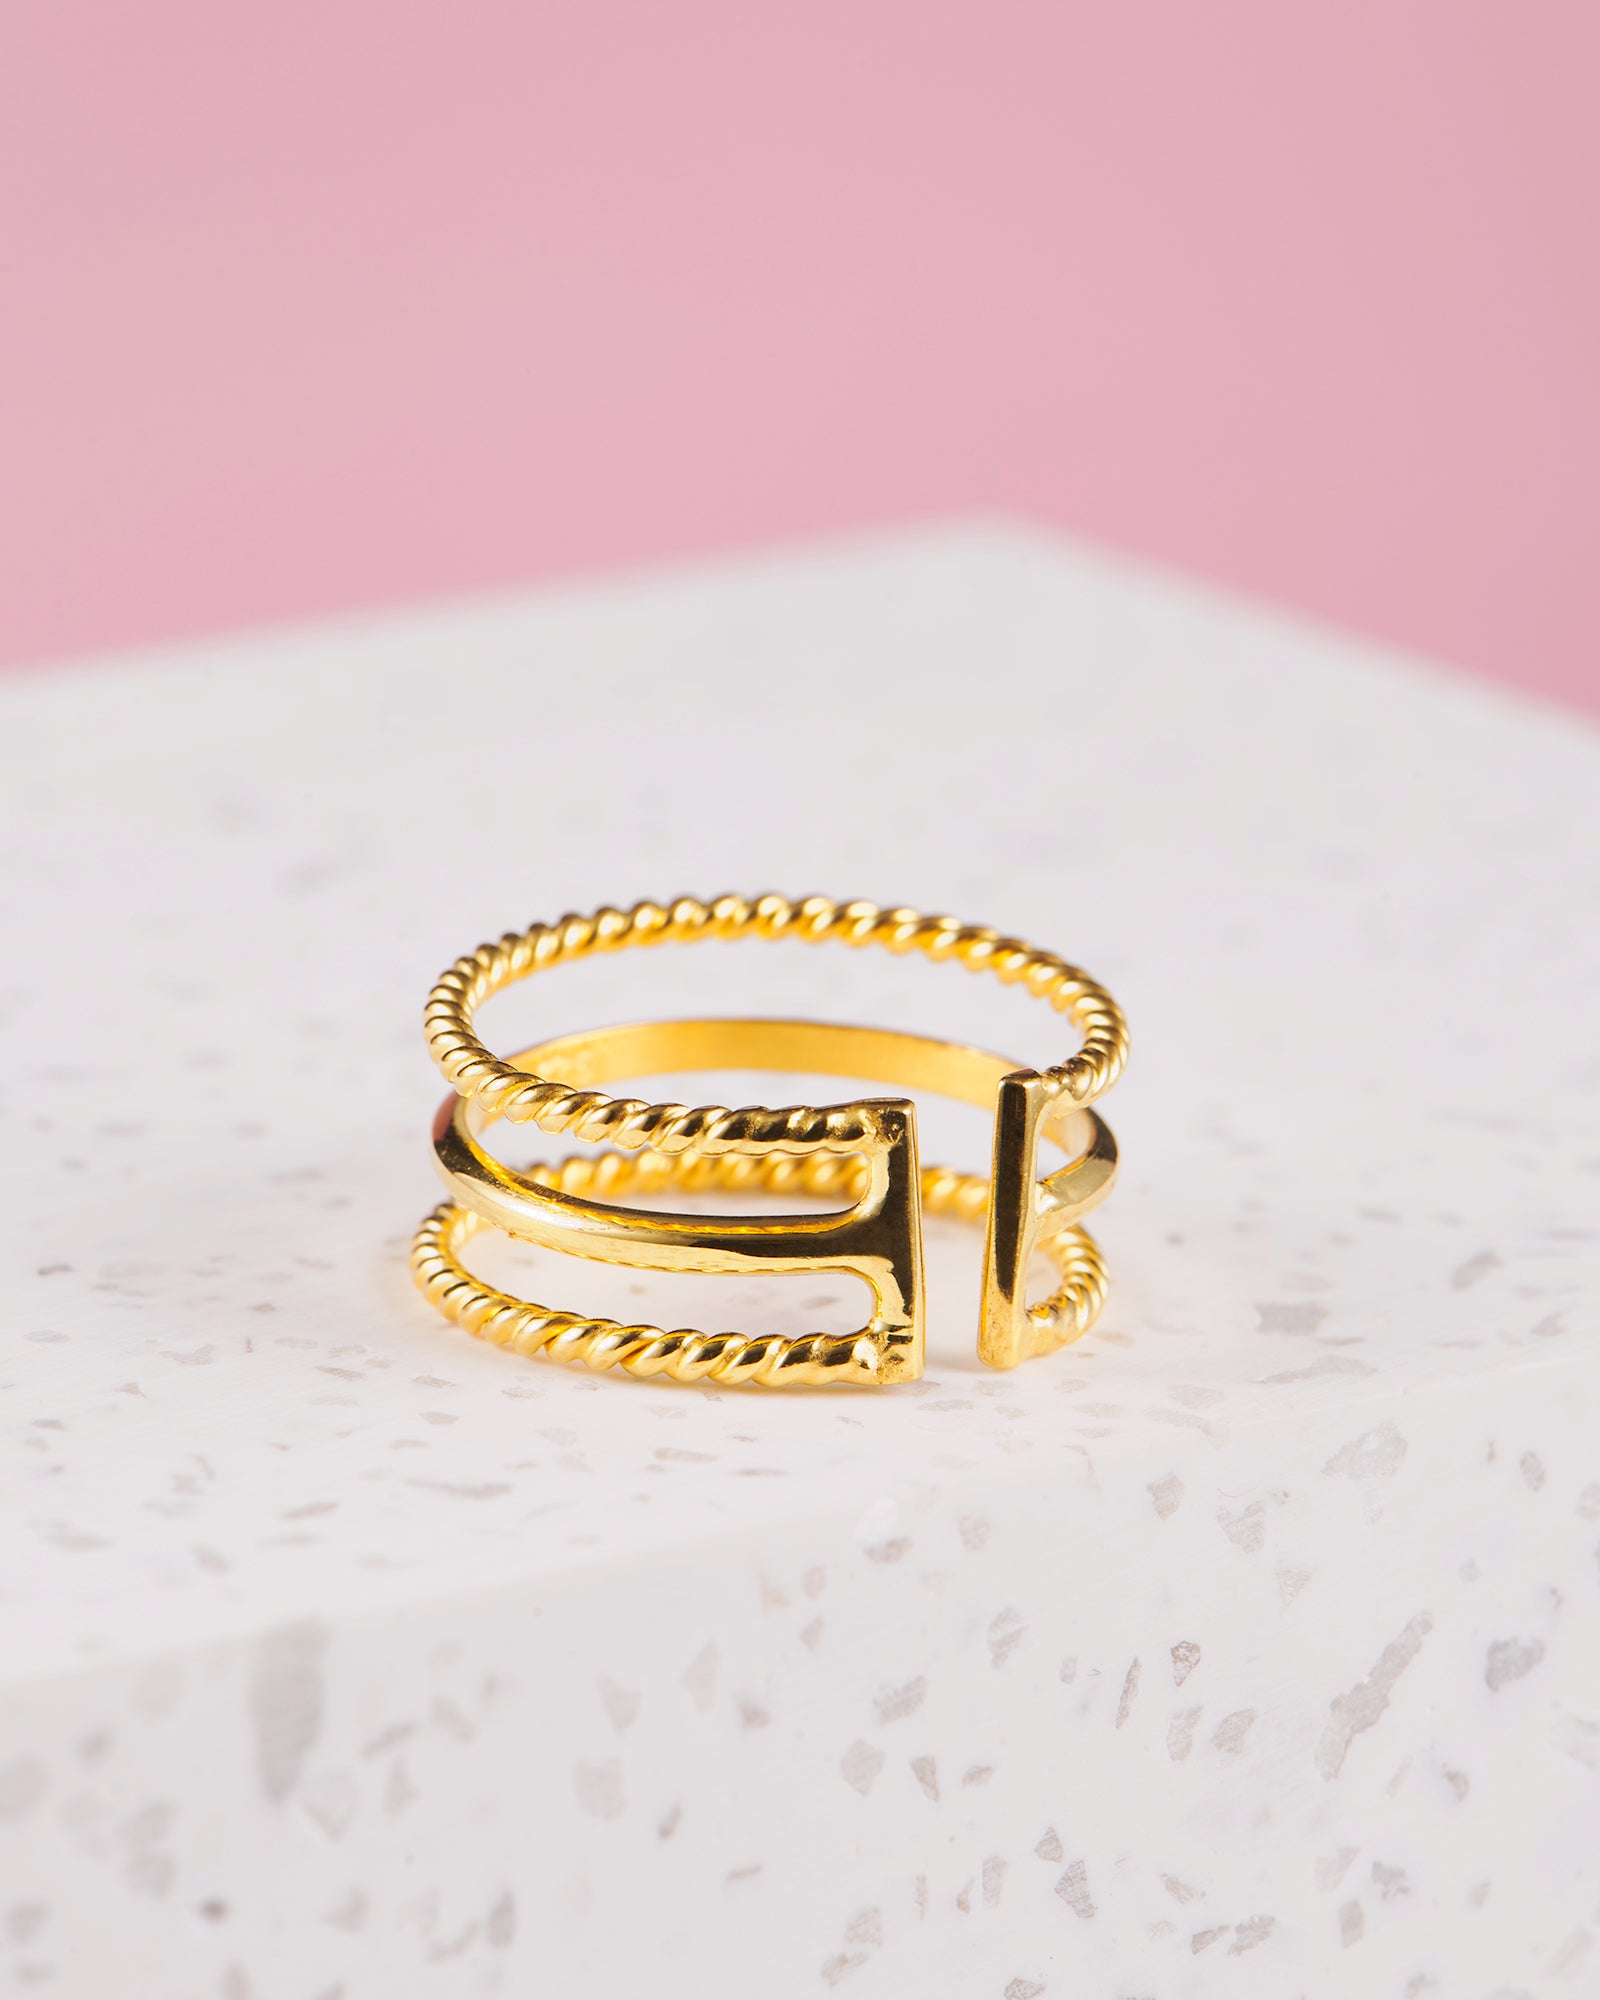 Handmade with love | VERLAN Jewellery | Fairfashion | Handgemachte Ringe im Boho Look aus Bali | Fair und nachhaltig handgefertigter Schmuck | Verstellbarer Ring | Kombi & adjustable Ring | BERAWA Ring